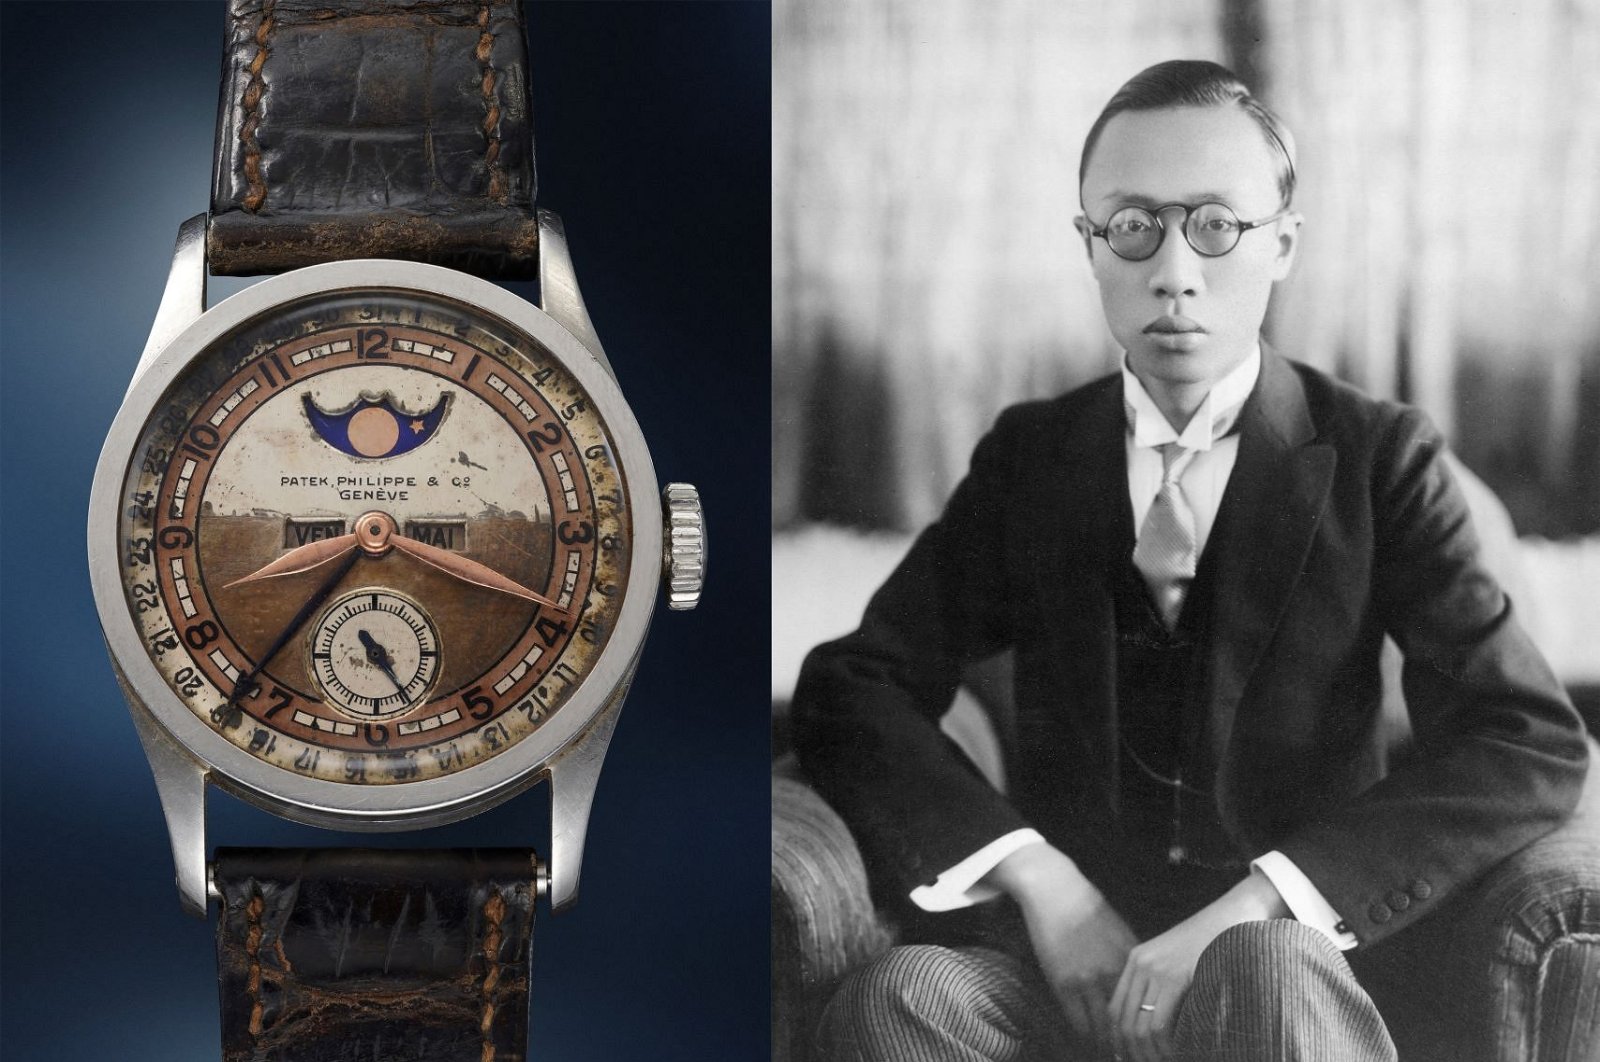 Arloji kaisar terakhir Tiongkok terjual ,2 juta di lelang